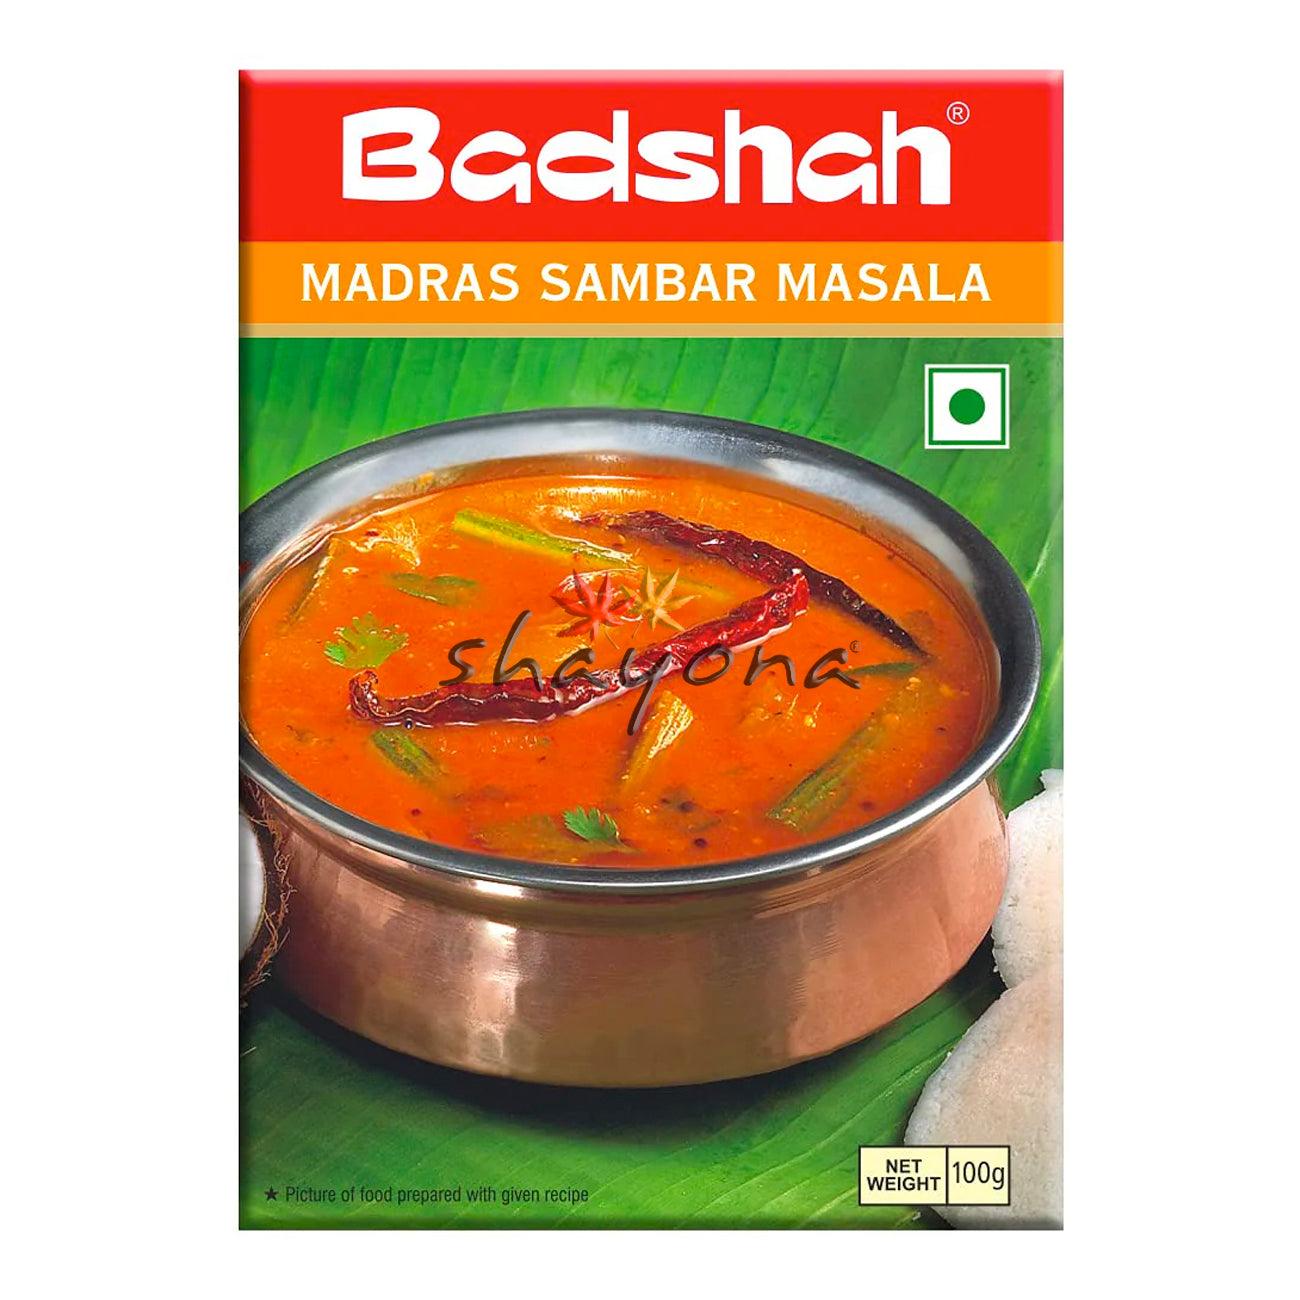 Badshah Madras Sambar Masala - Shayona UK